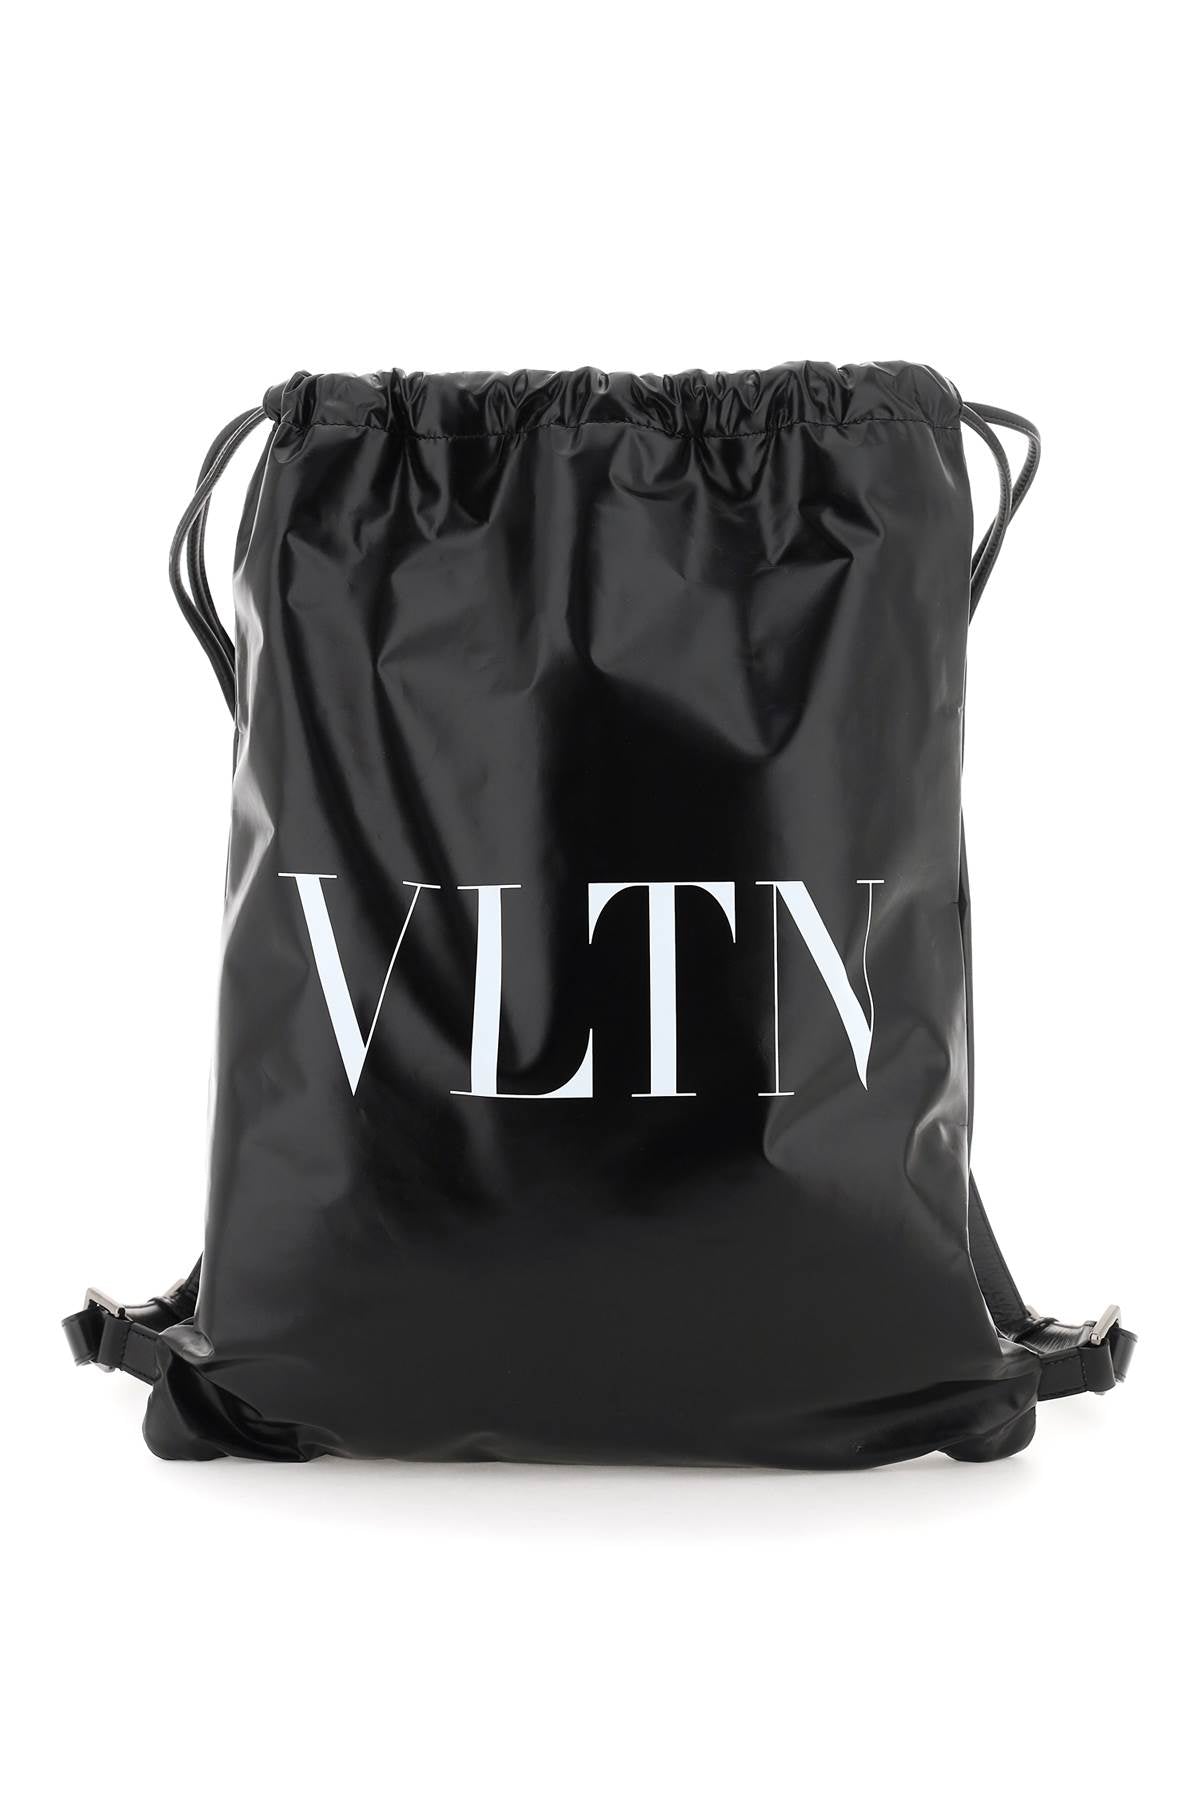 Valentino garavani vltn soft backpack-men > bags > backpacks-Valentino GARAVANI-os-Black-Urbanheer